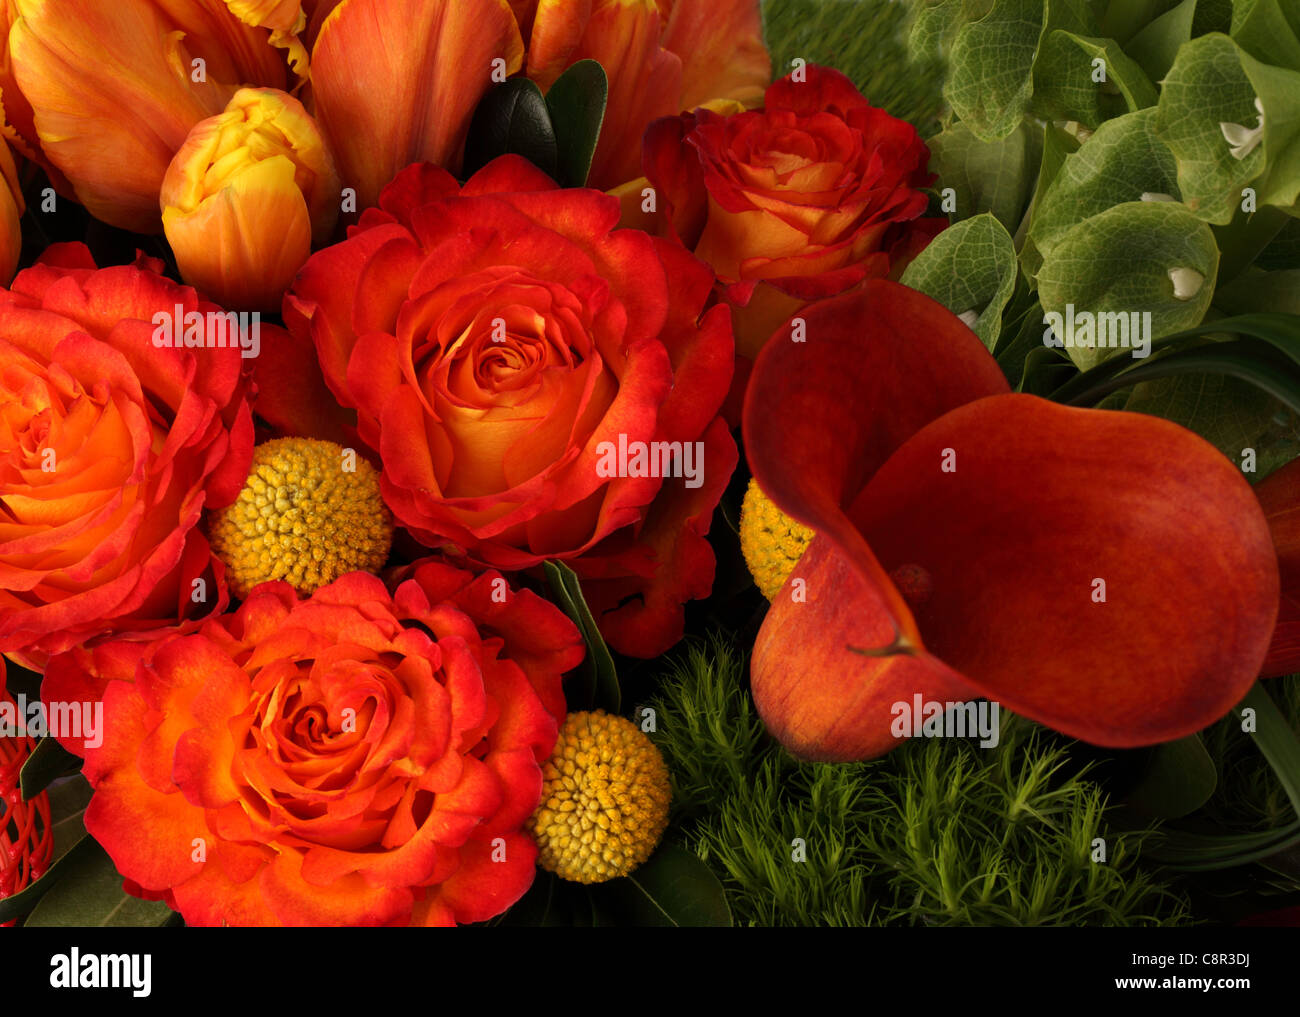 Un gros plan d'un bouquet de fleurs colorées. Orange / jaune tulipes, roses rouges, rouge 2 Proteas Banque D'Images